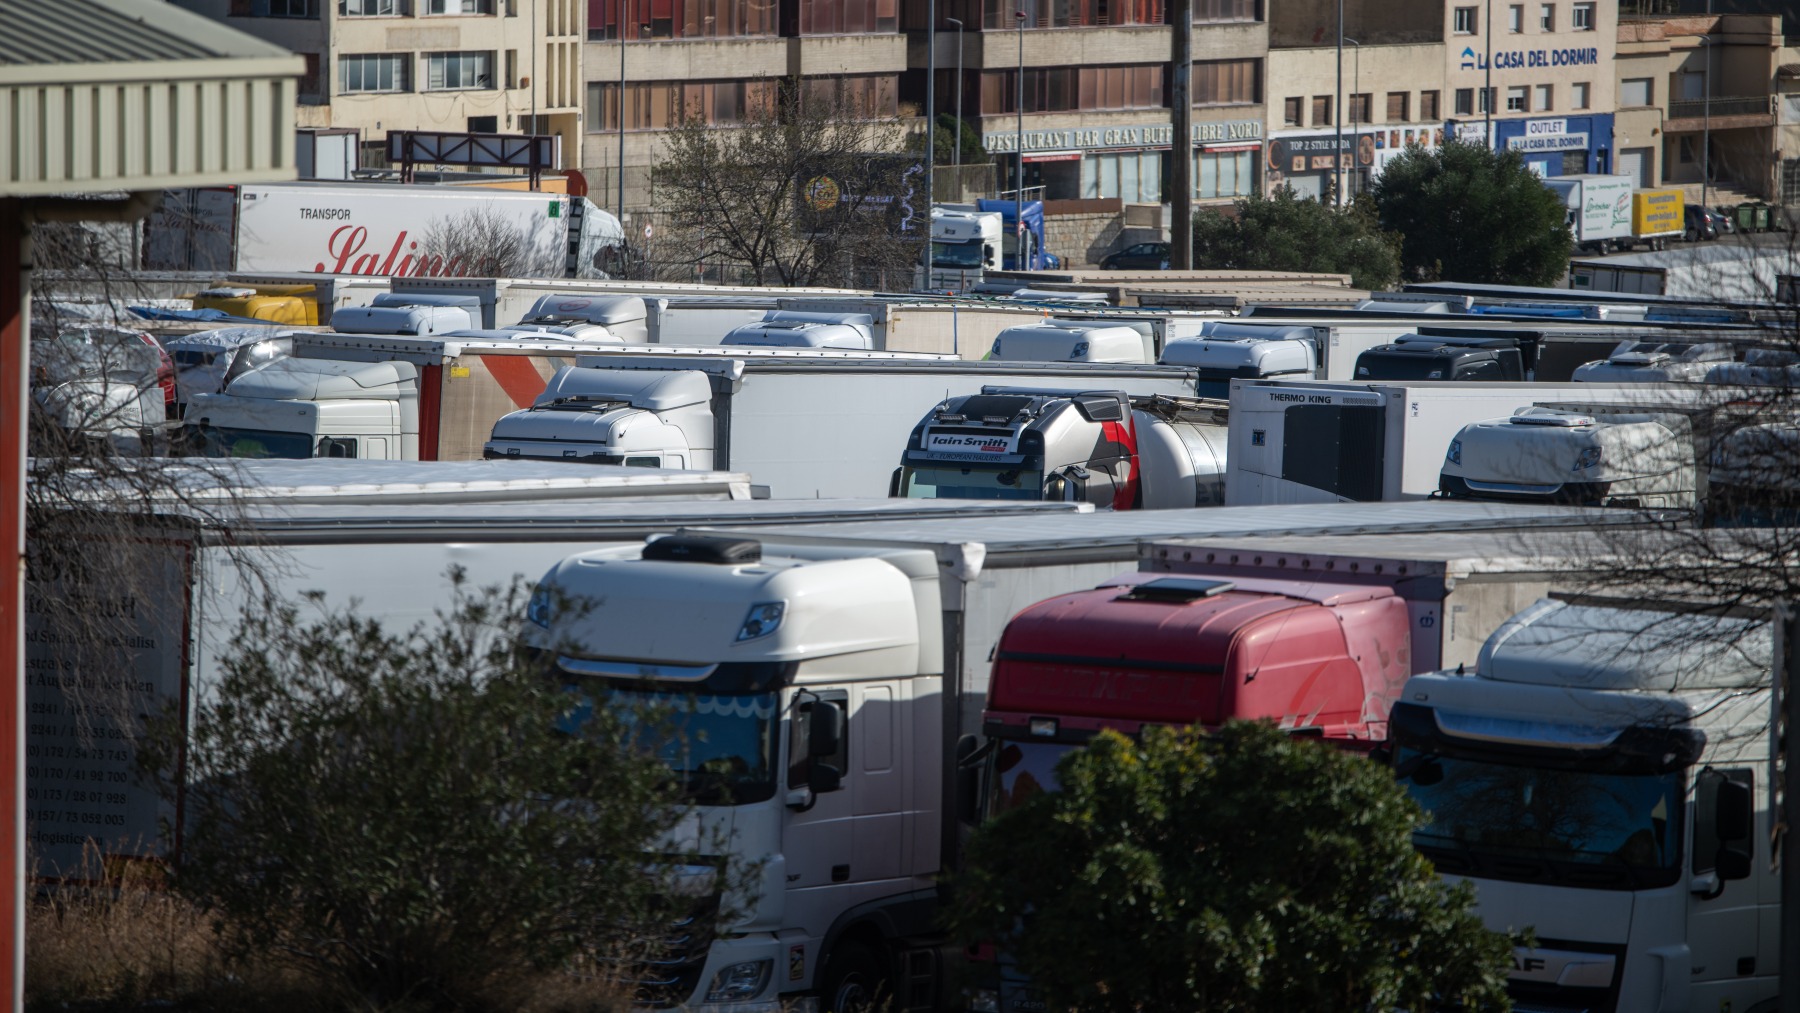 Camiones detenidos en La Jonquera, Girona, frontera entre Francia y España (EUROPA PRESS).